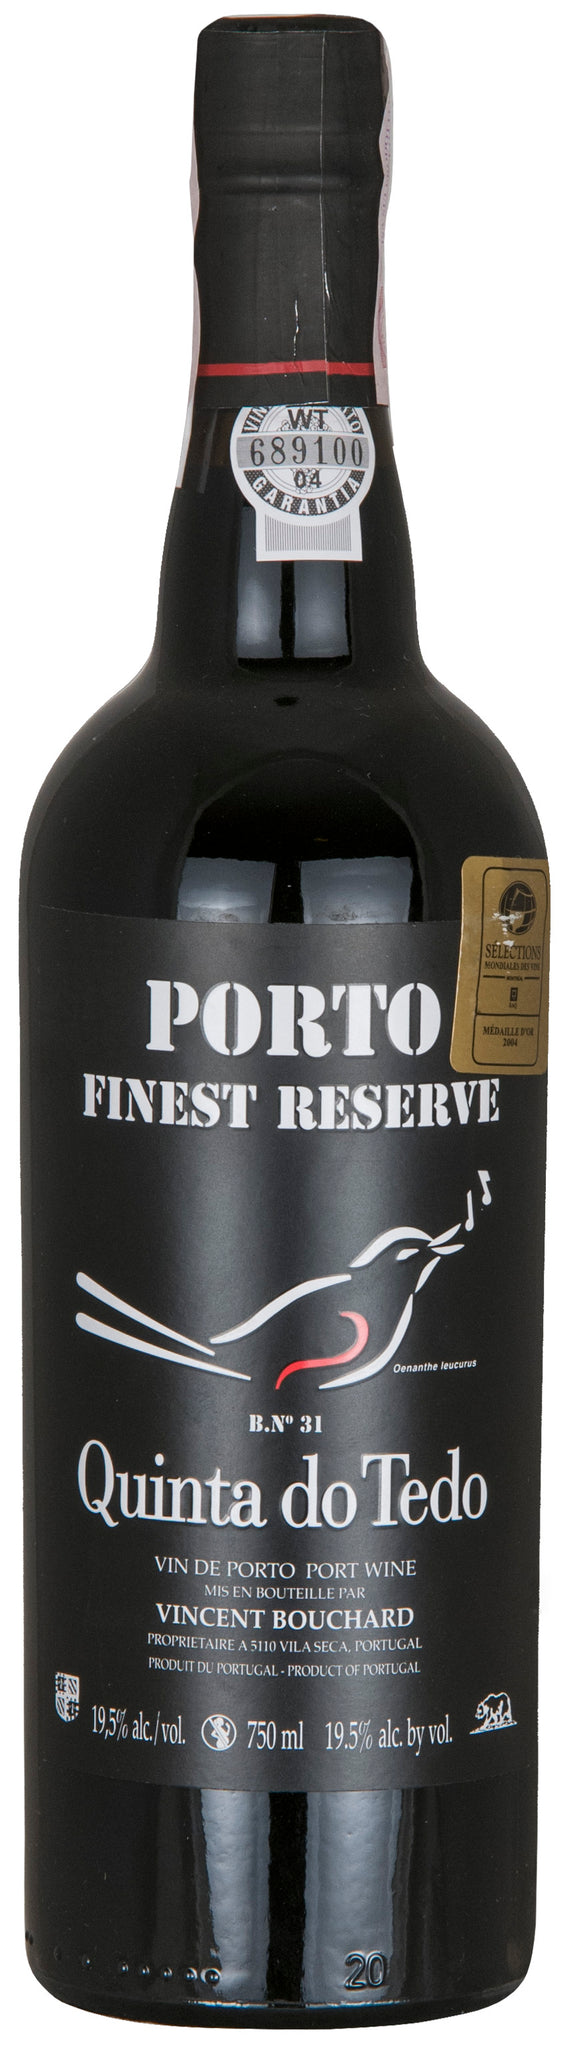 PORTO RUBY FINEST RESERVE (6 ANNI) - barrique #31 Quinta do Tedo